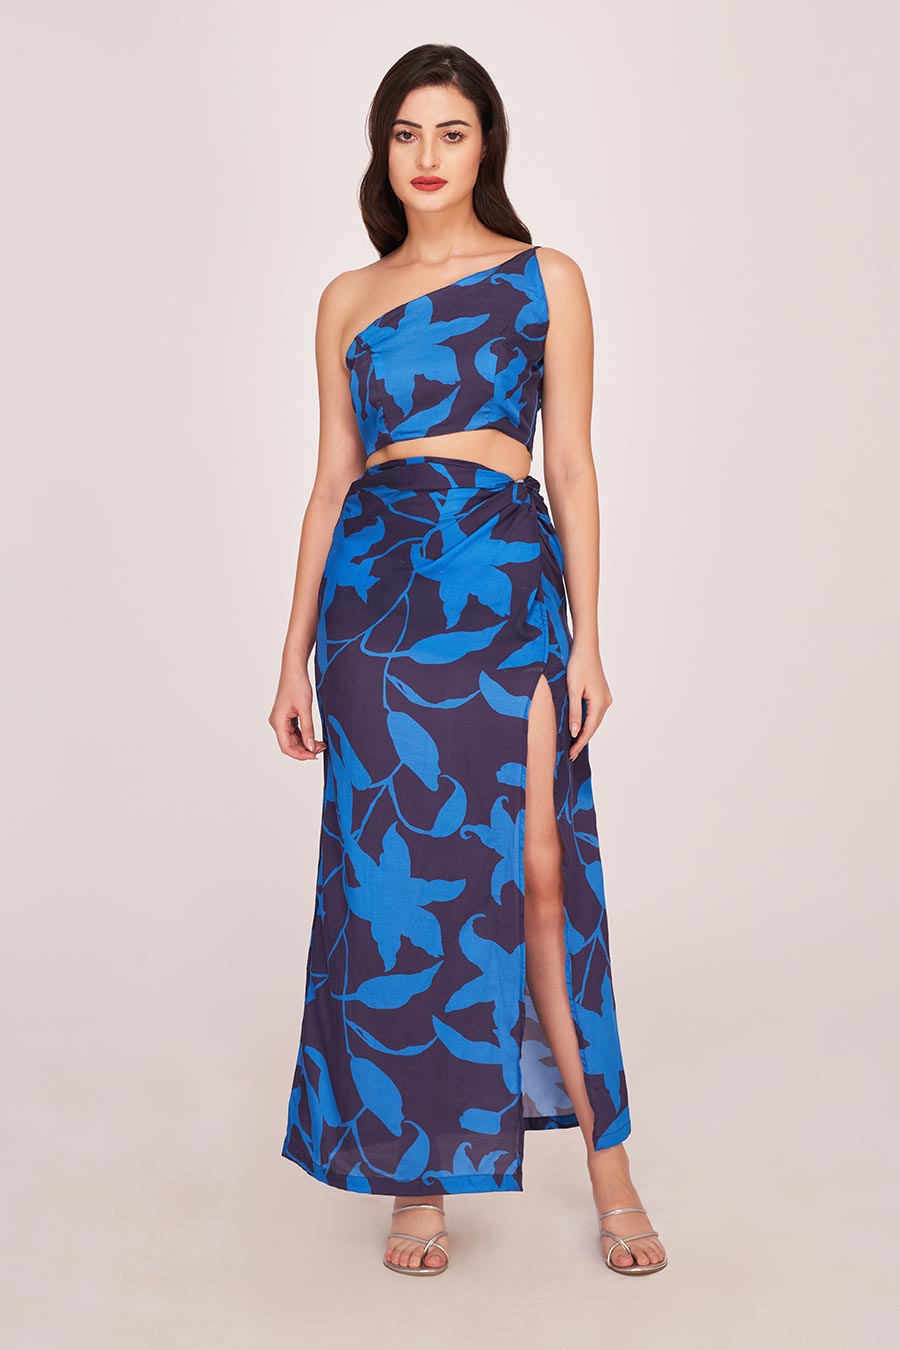 Blue Printed One-Shoulder Top & Long Skirt Co-Ord Set